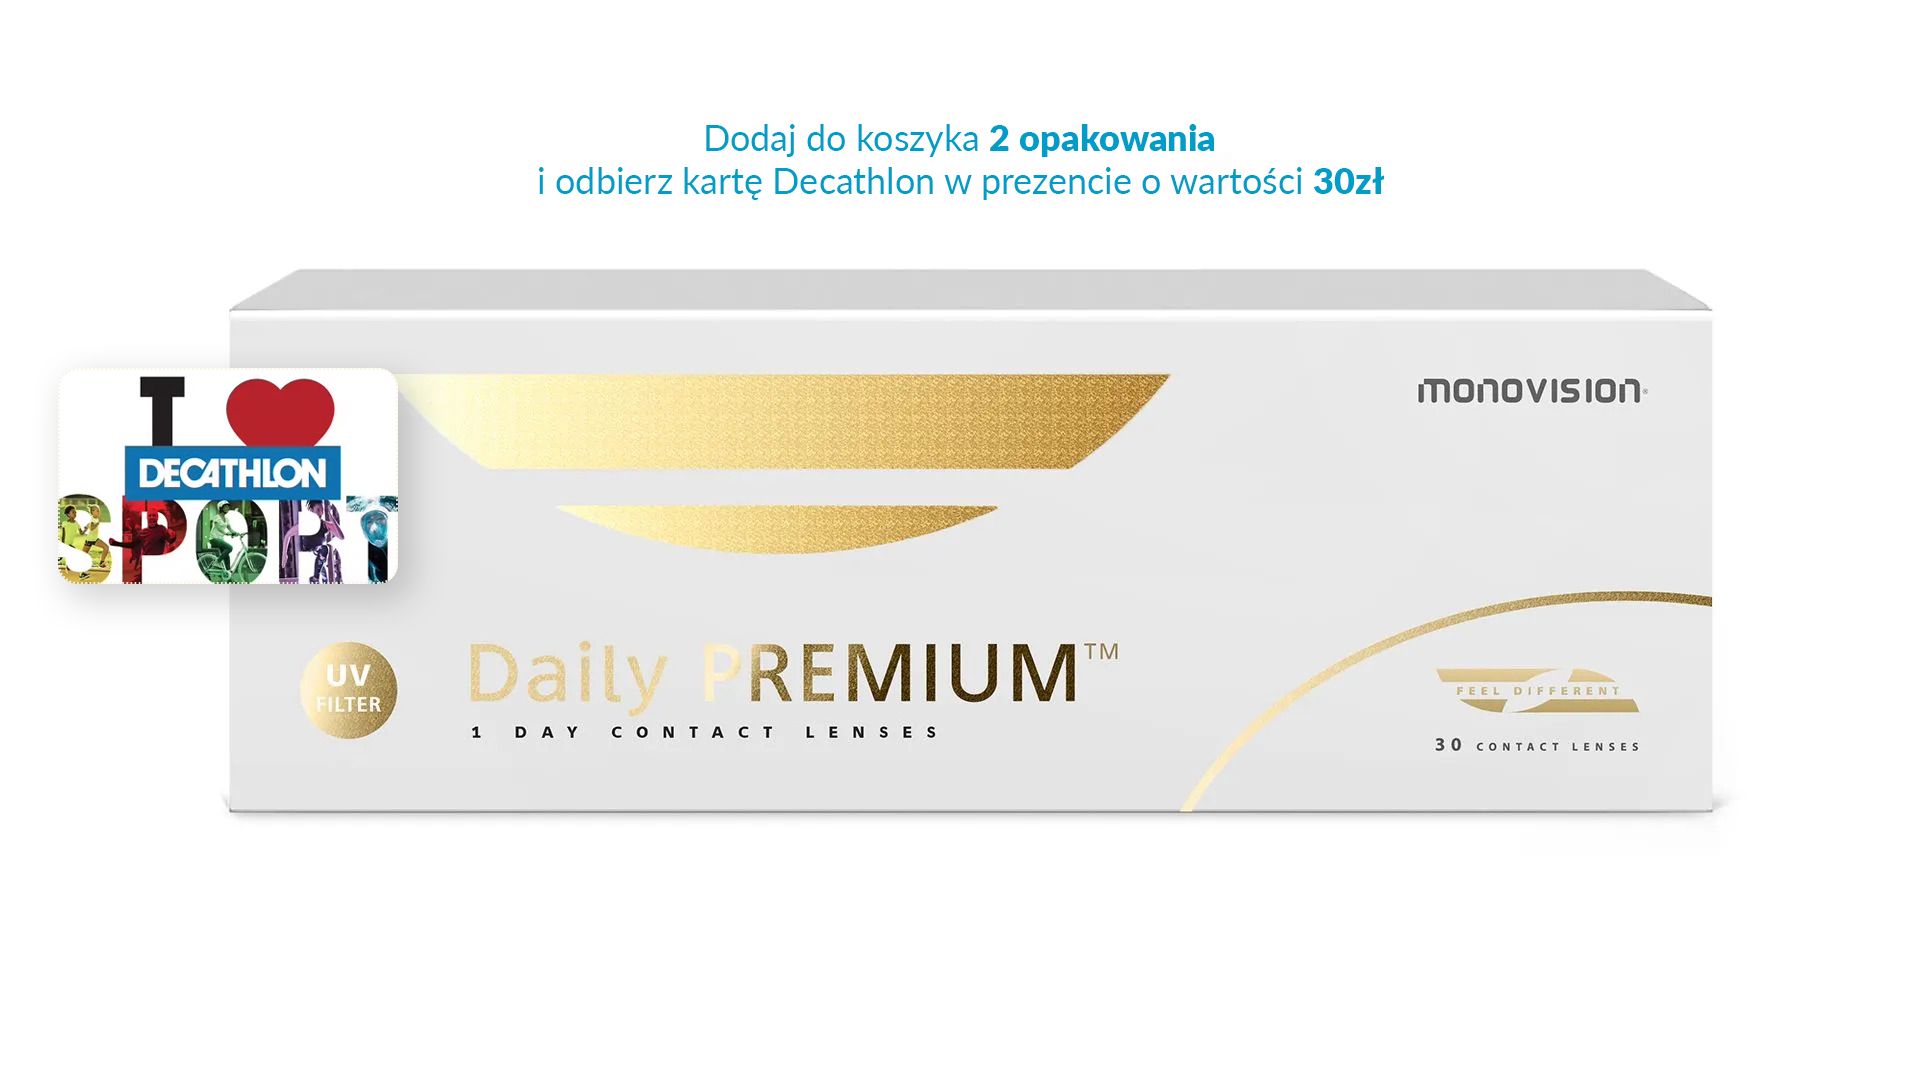 Daily Premium